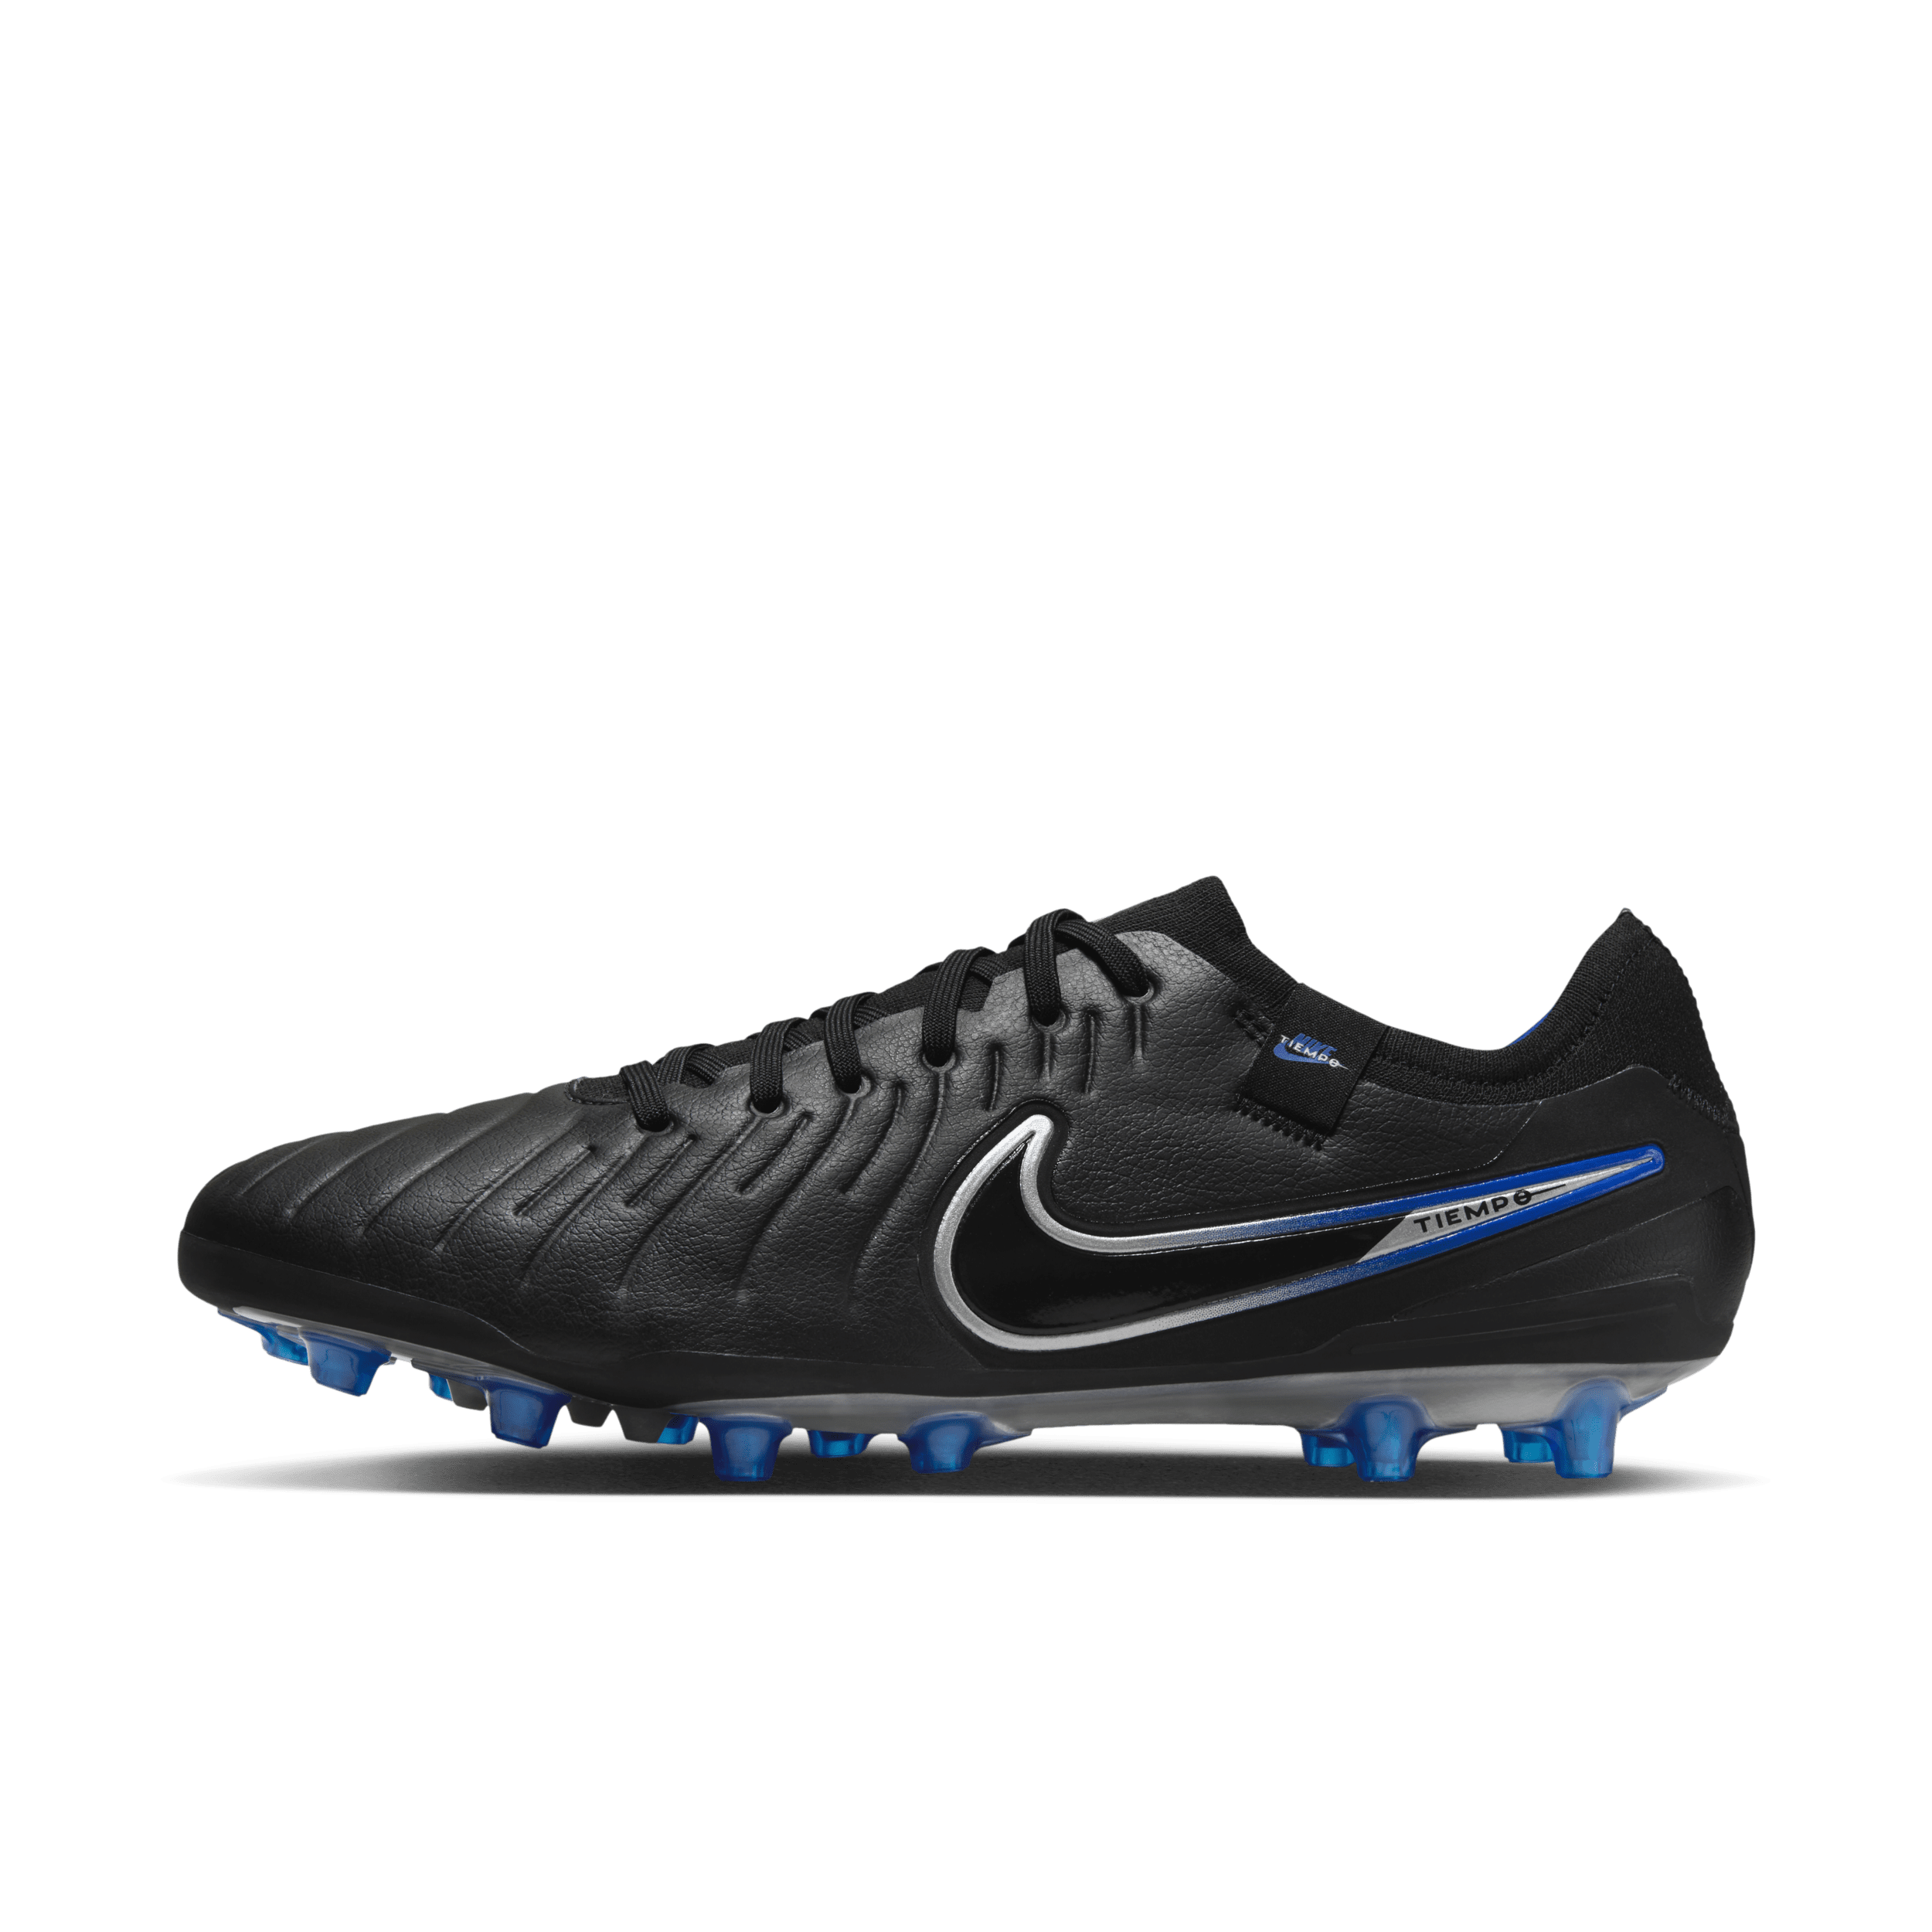 Nike Tiempo Legend 10 Pro Artificial-fodboldstøvle (low-top) til kunstgræs - sort